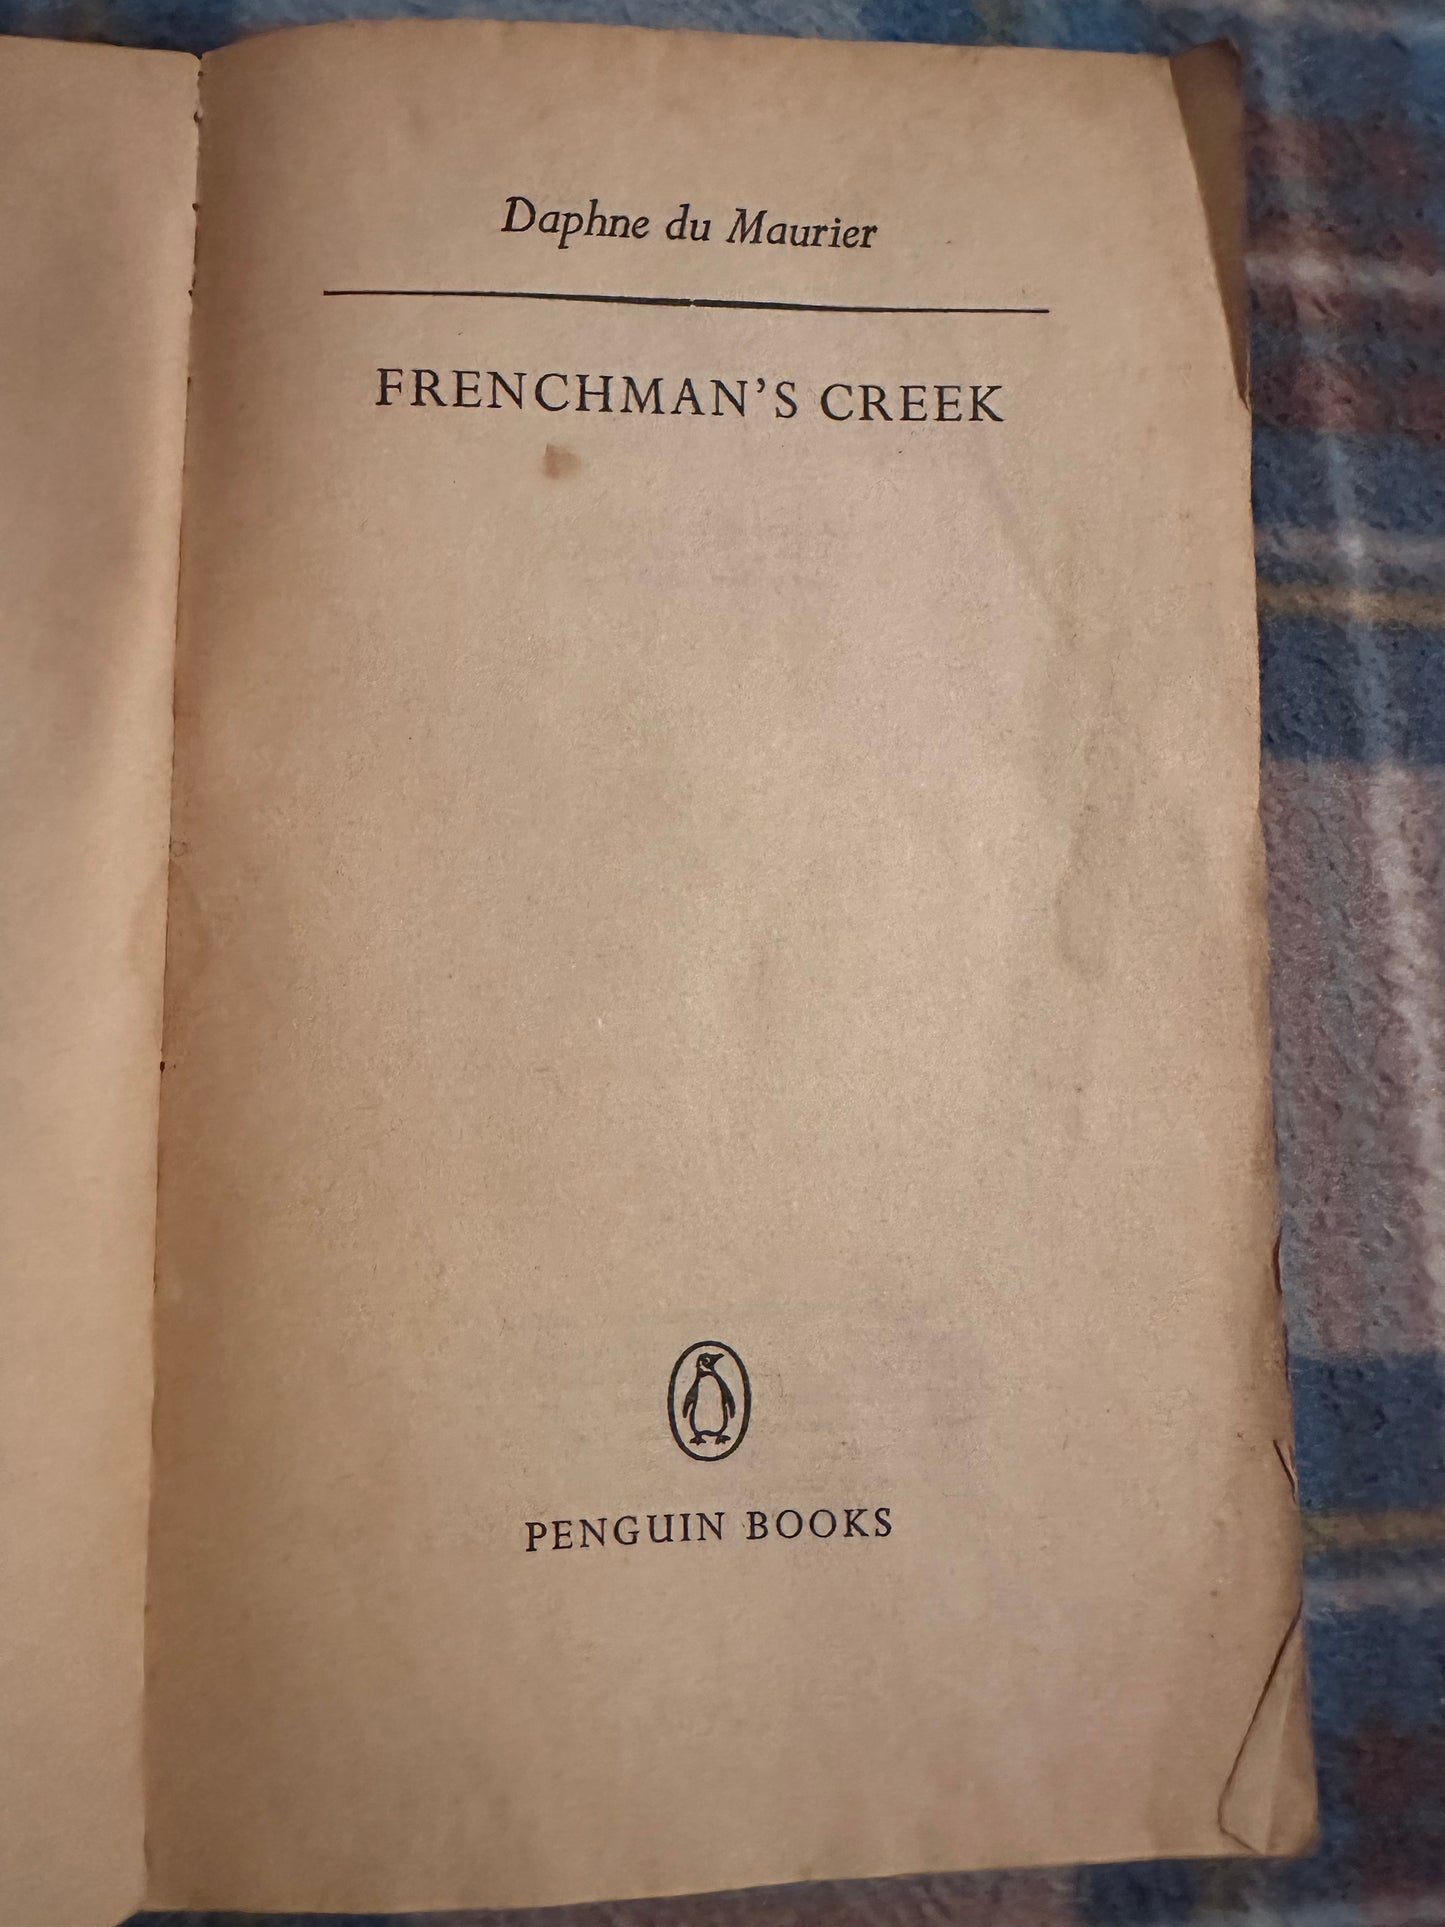 1969 Frenchman’s Creek - Daphne du Maurier(Penguin Books)